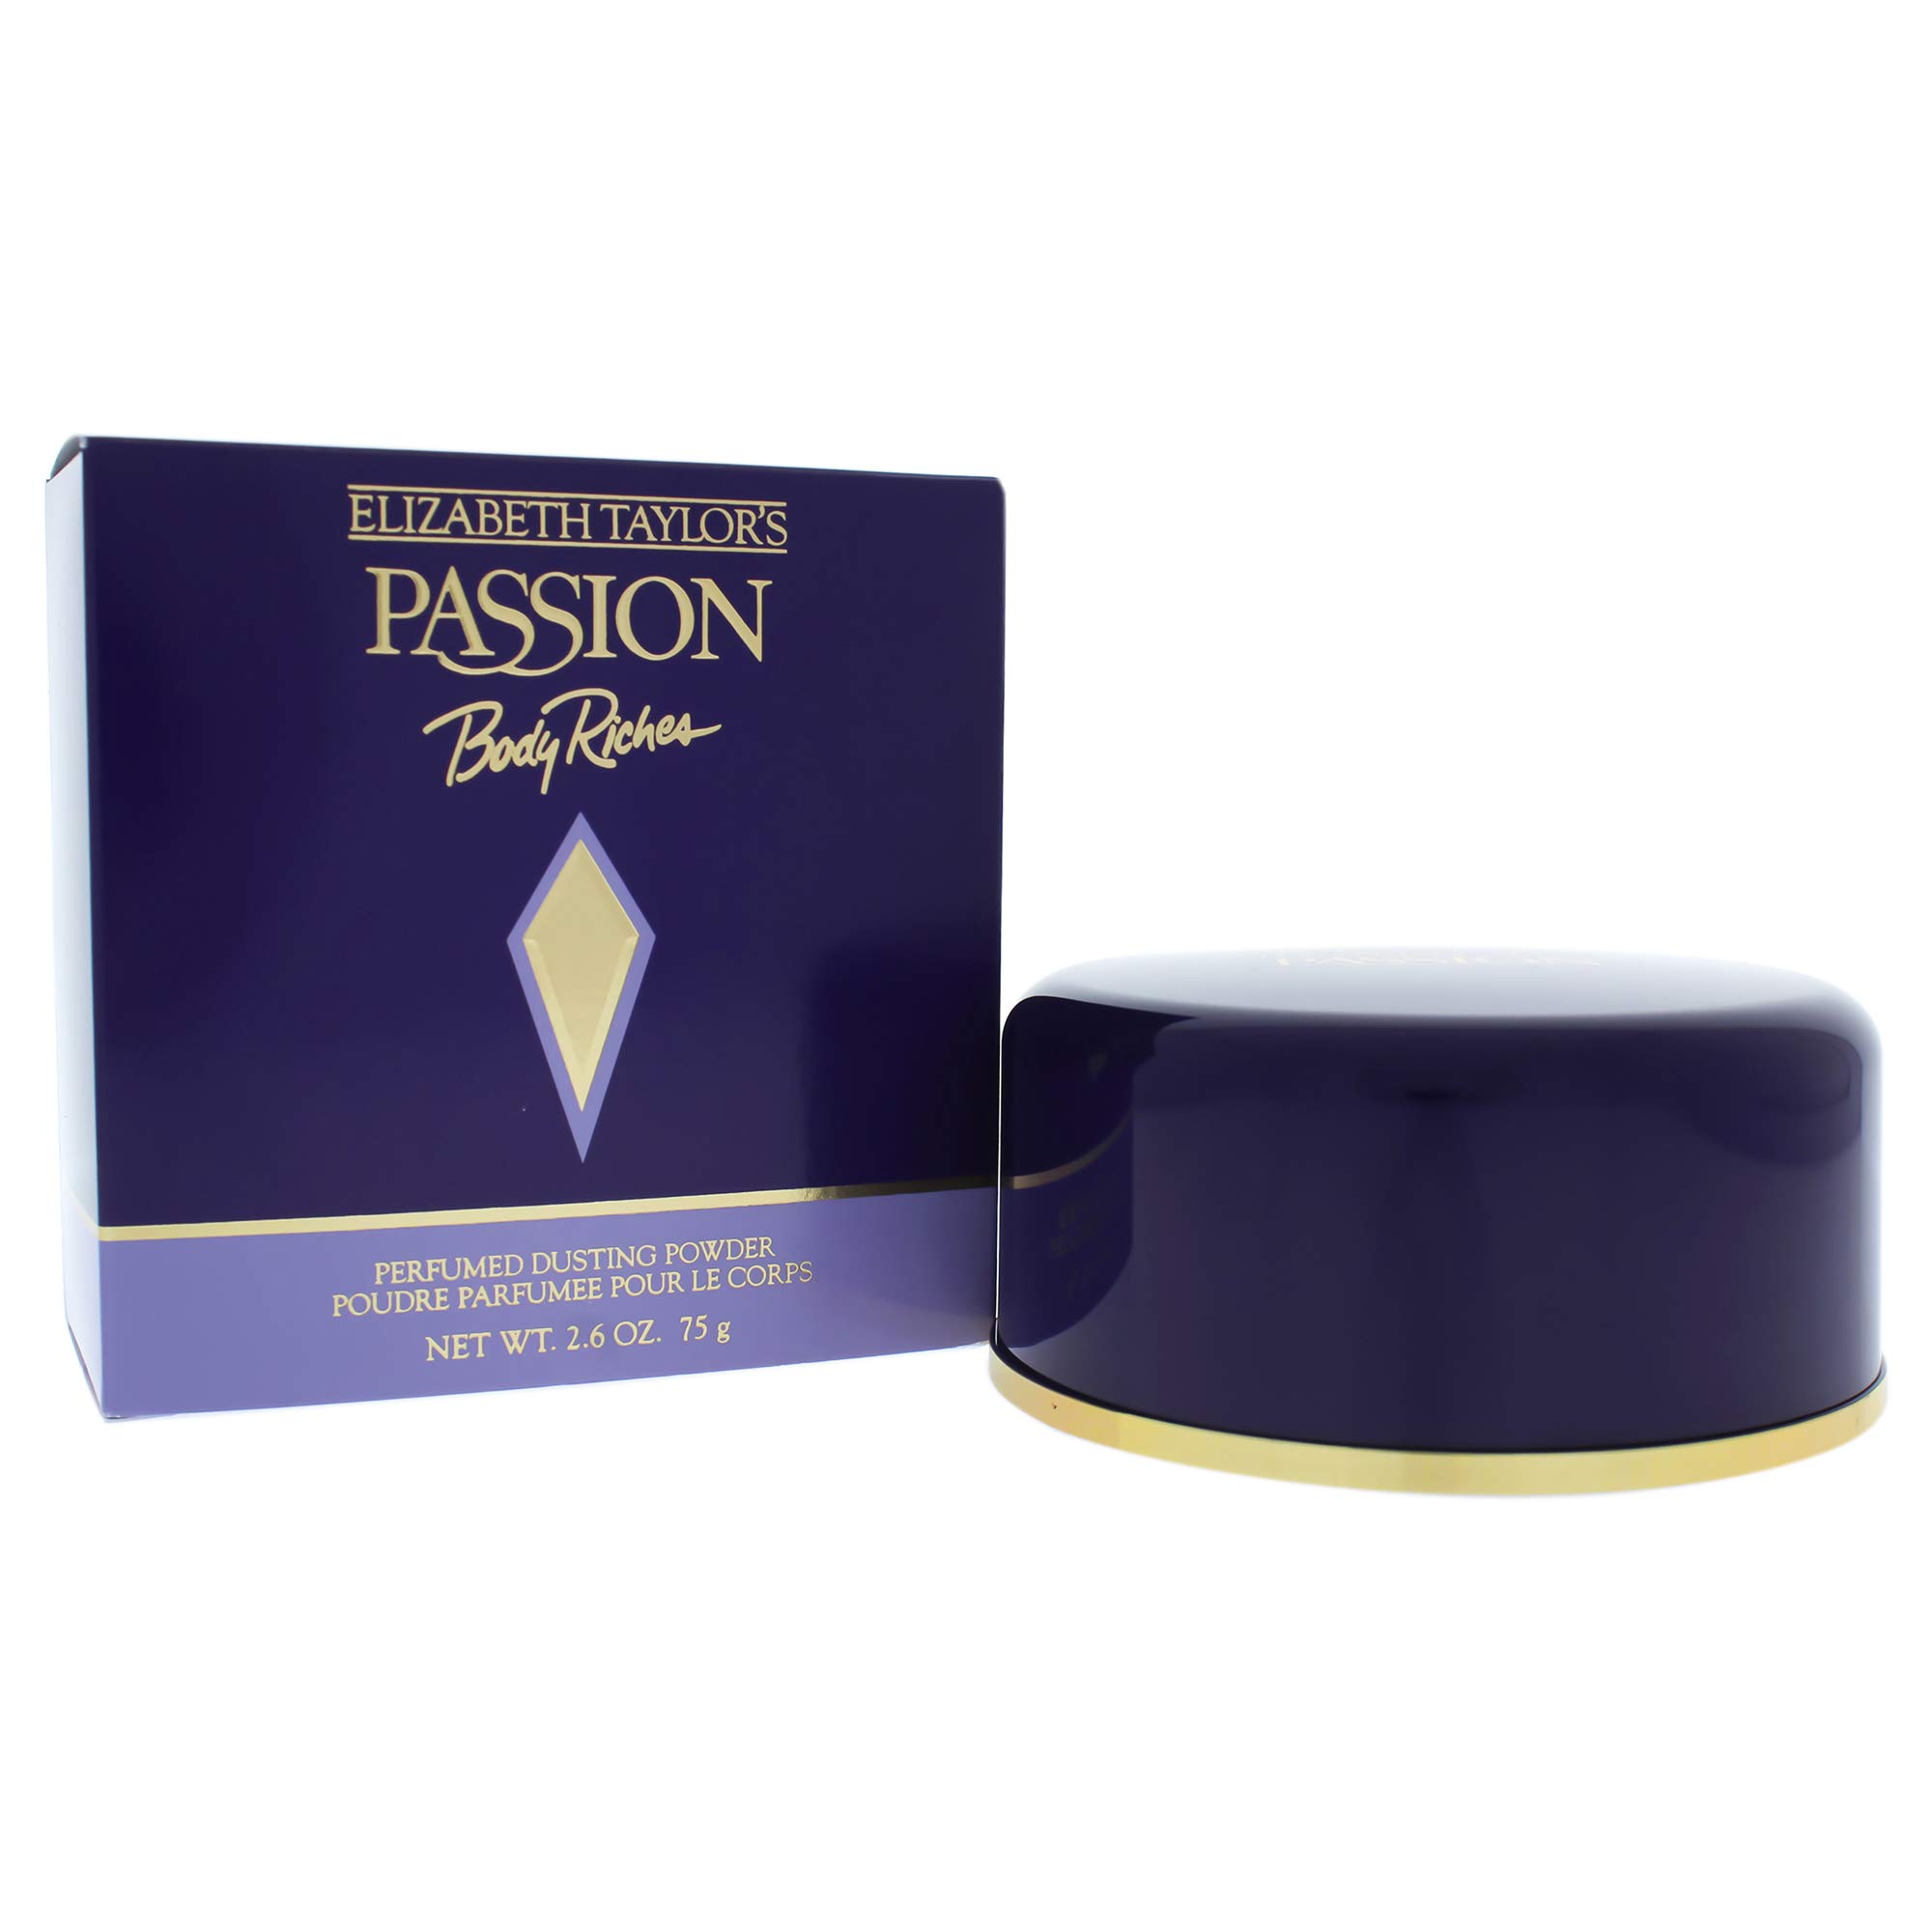 Passion by Elizabeth Taylor for Women - 2.6 oz Perfumed Dusting Powder - W-BB-1265